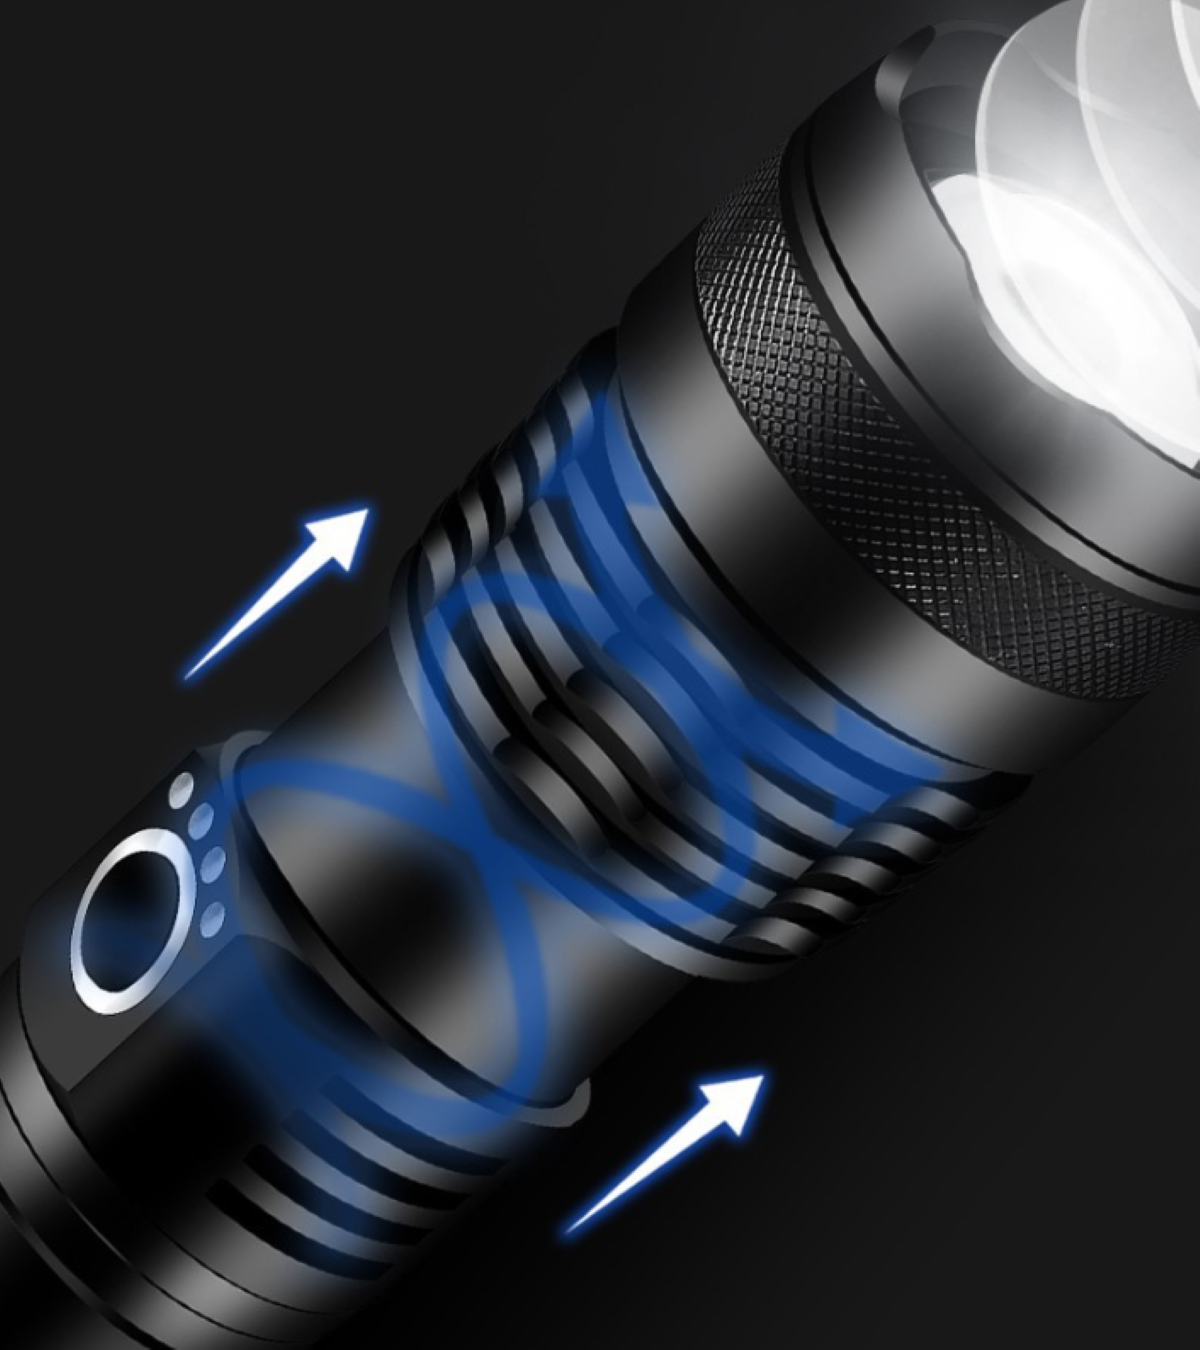 Taschenlampe ENBAOXIN - mit 5 Taschenlampe einstellbar Pneumatischer Helle großer Stufen Reichweite Zoom,